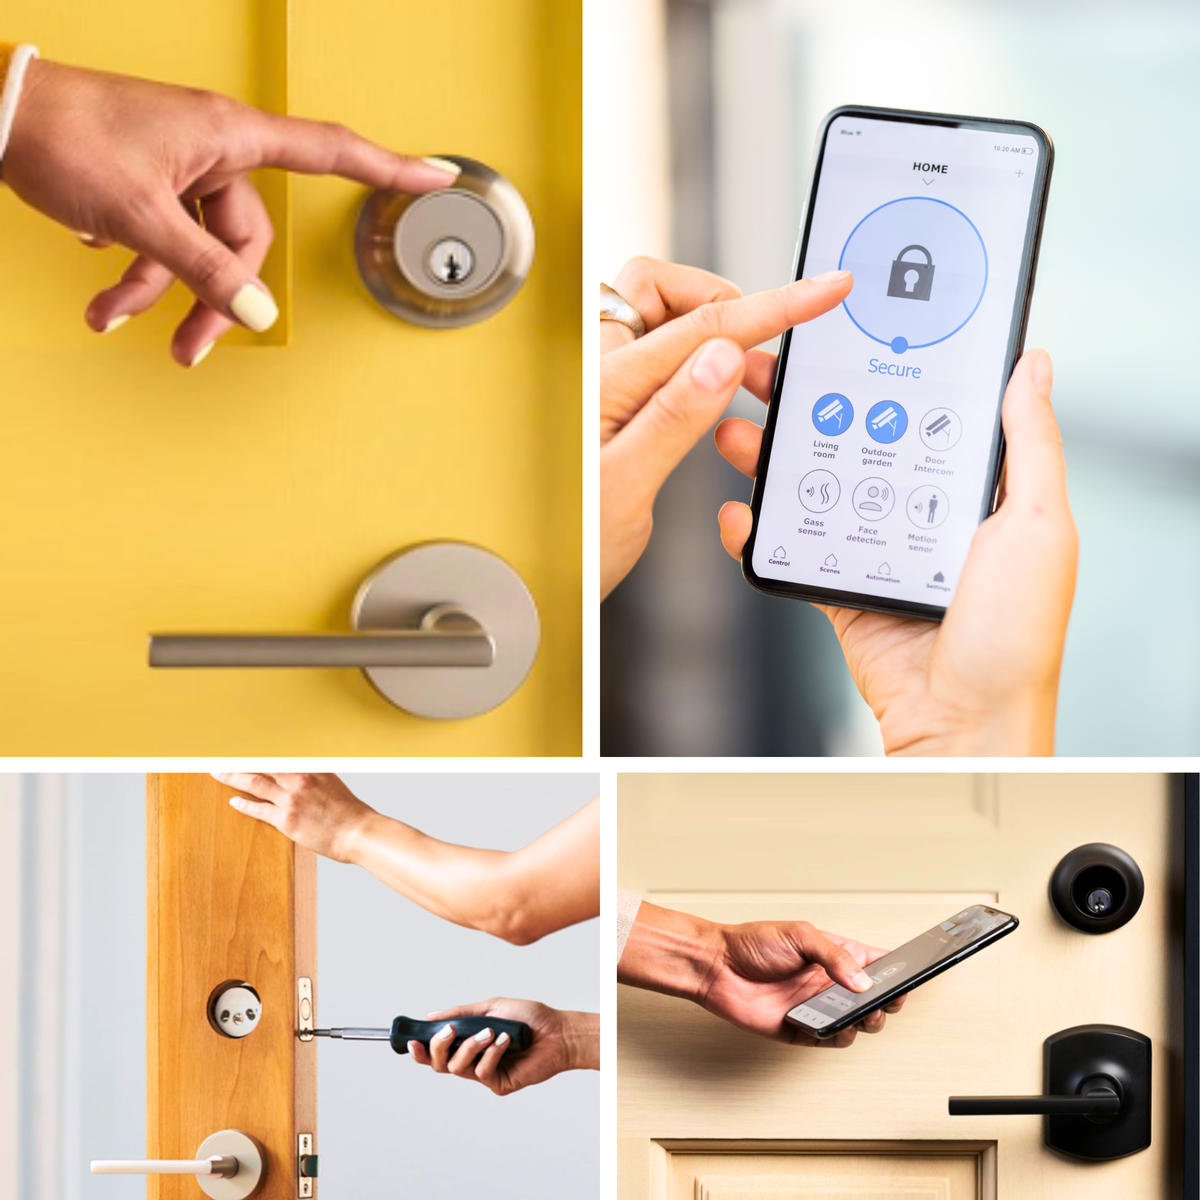 Smart lock touch function, using smart phone to set door lock, installing smart deadbolt, accessing door with smart phone